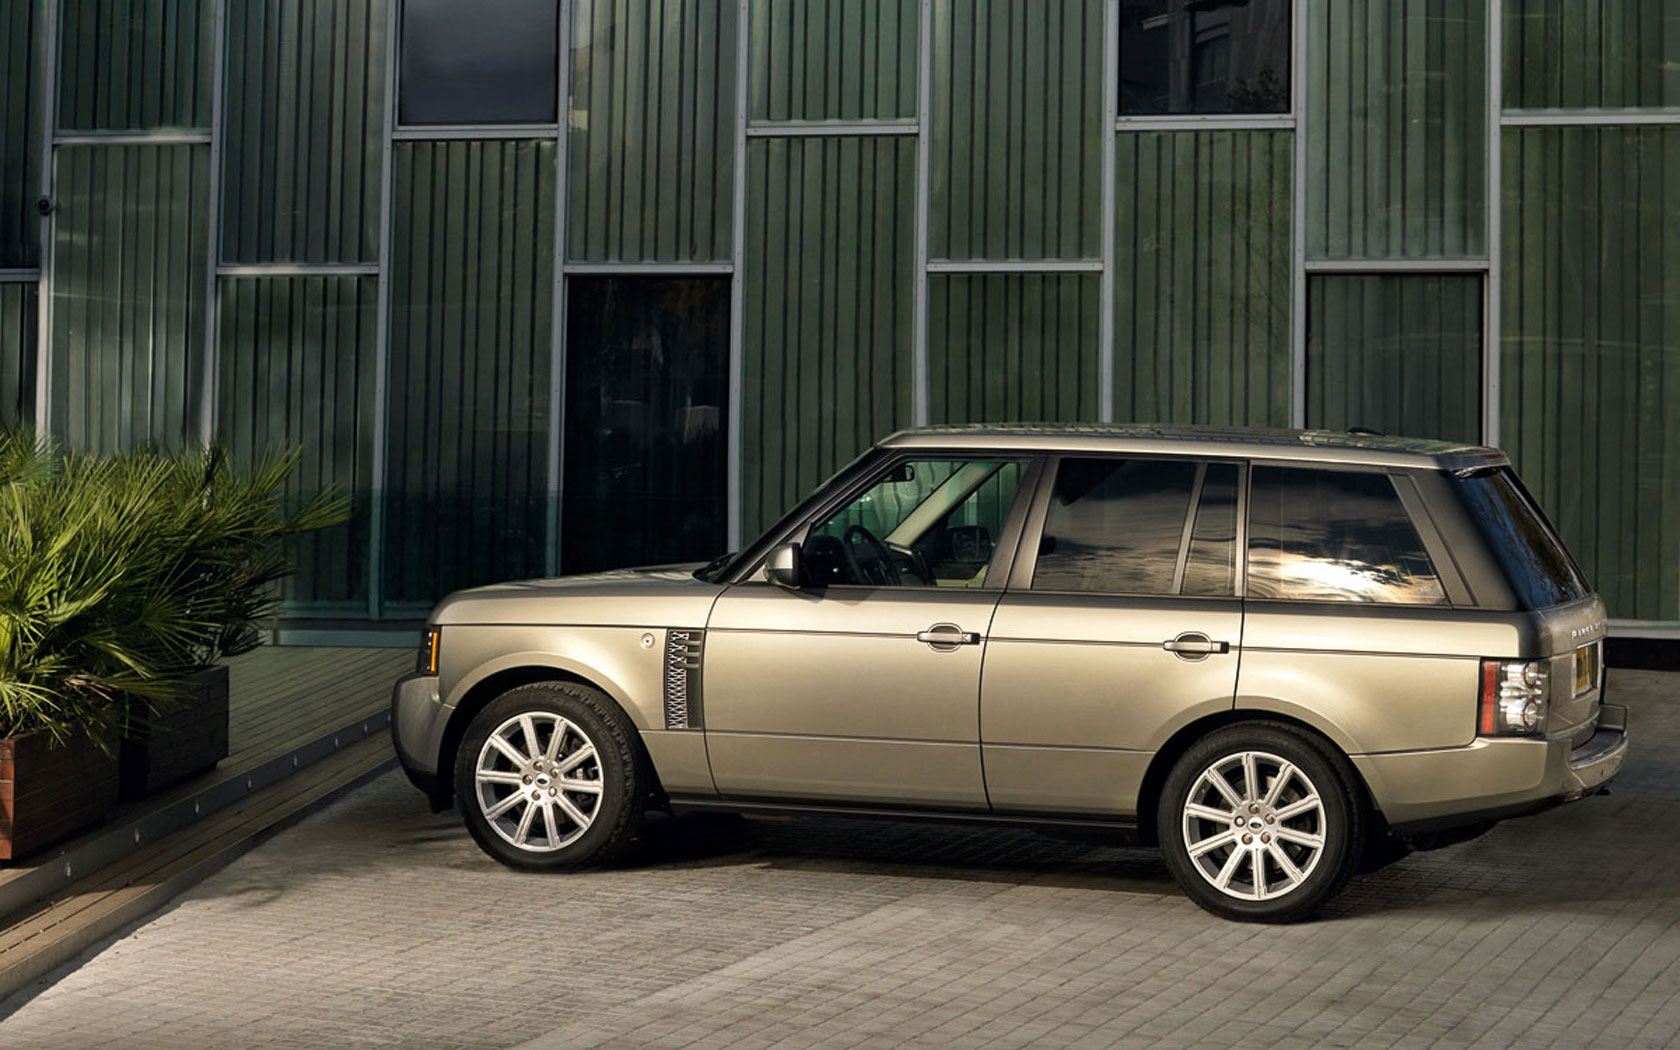  Land Rover Range Rover (2009-2012)